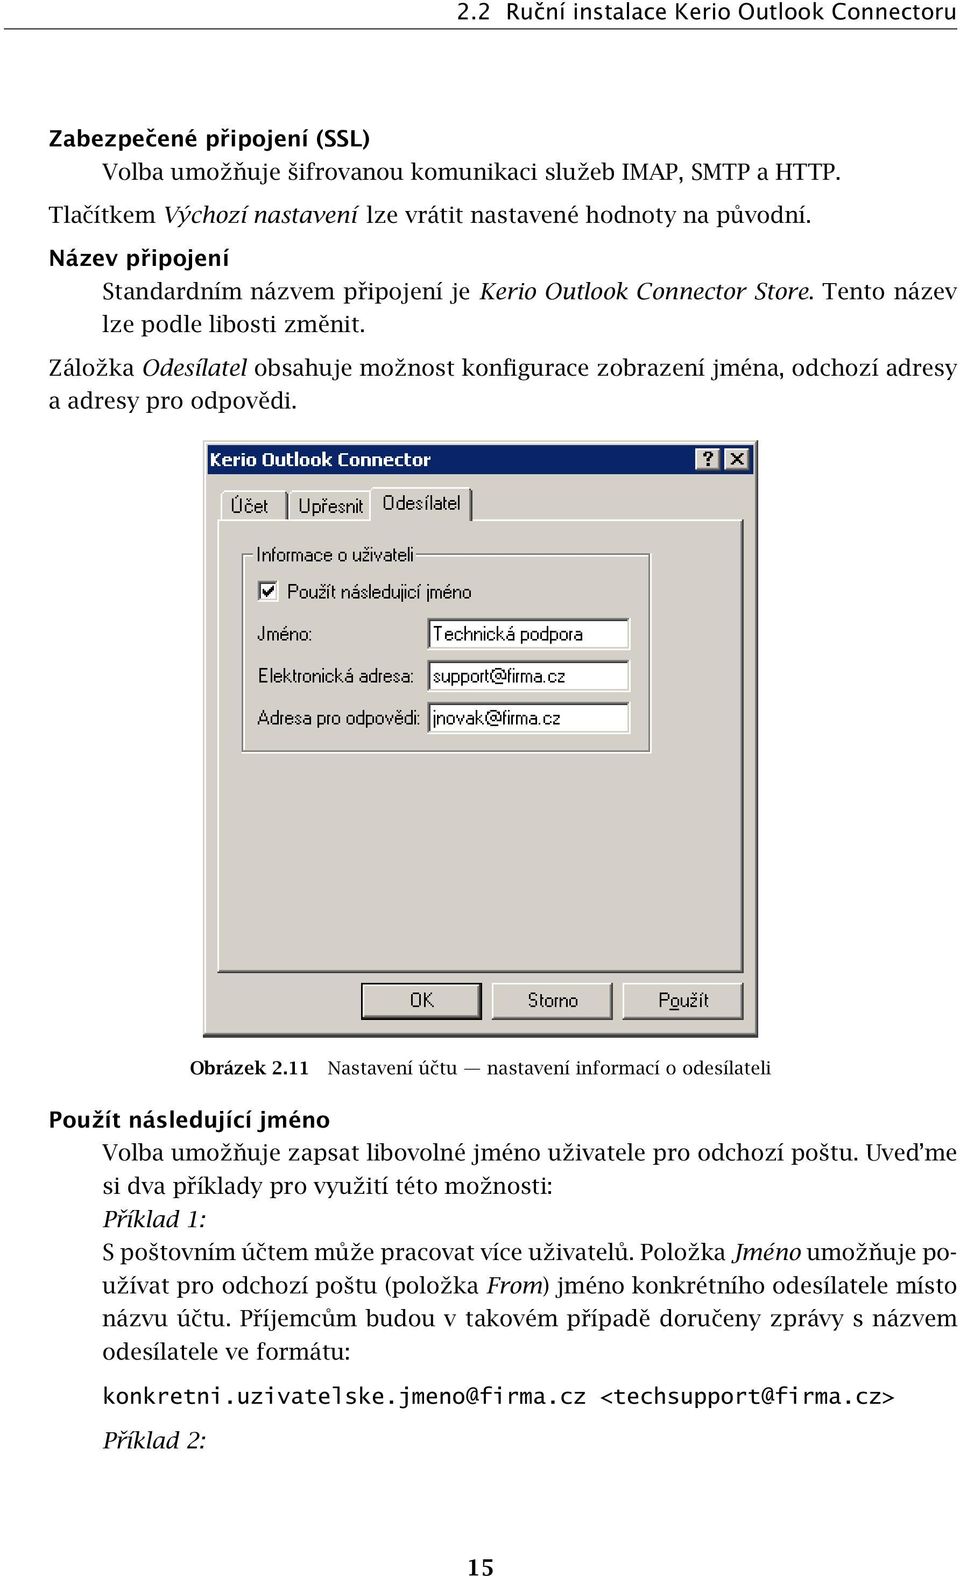 Záložka Odesílatel obsahuje možnost konfigurace zobrazení jména, odchozí adresy a adresy pro odpovědi. Obrázek 2.